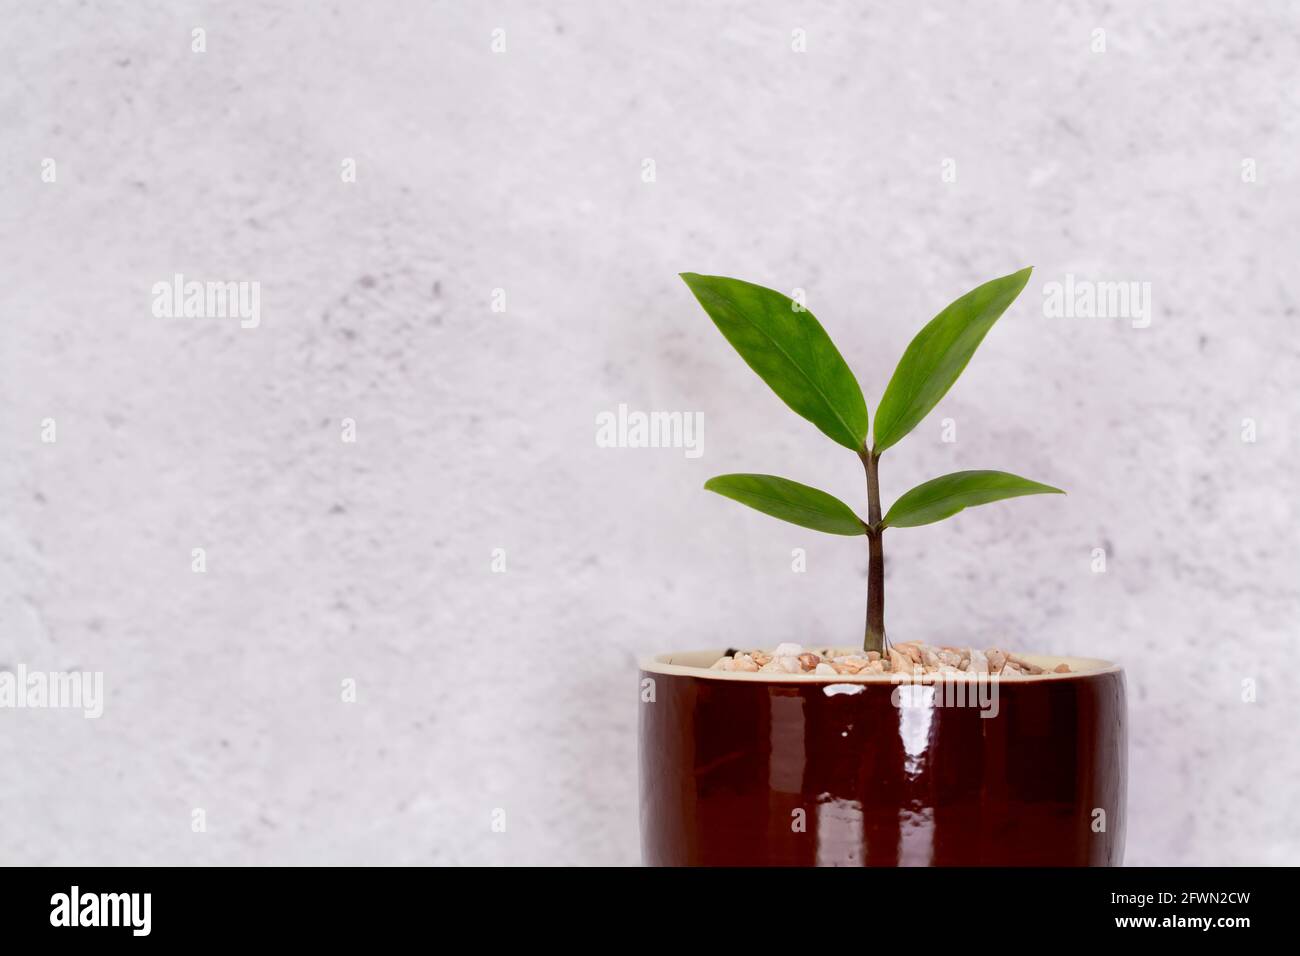 Mini-Pflanze Sukulent auf Holz weißen Schreibtisch, kleine Pflanze und  Blatt in Topf auf Tisch mit Zementstruktur Hintergrund, kopieren Raum,  niemand, Baum in Topf fo Stockfotografie - Alamy